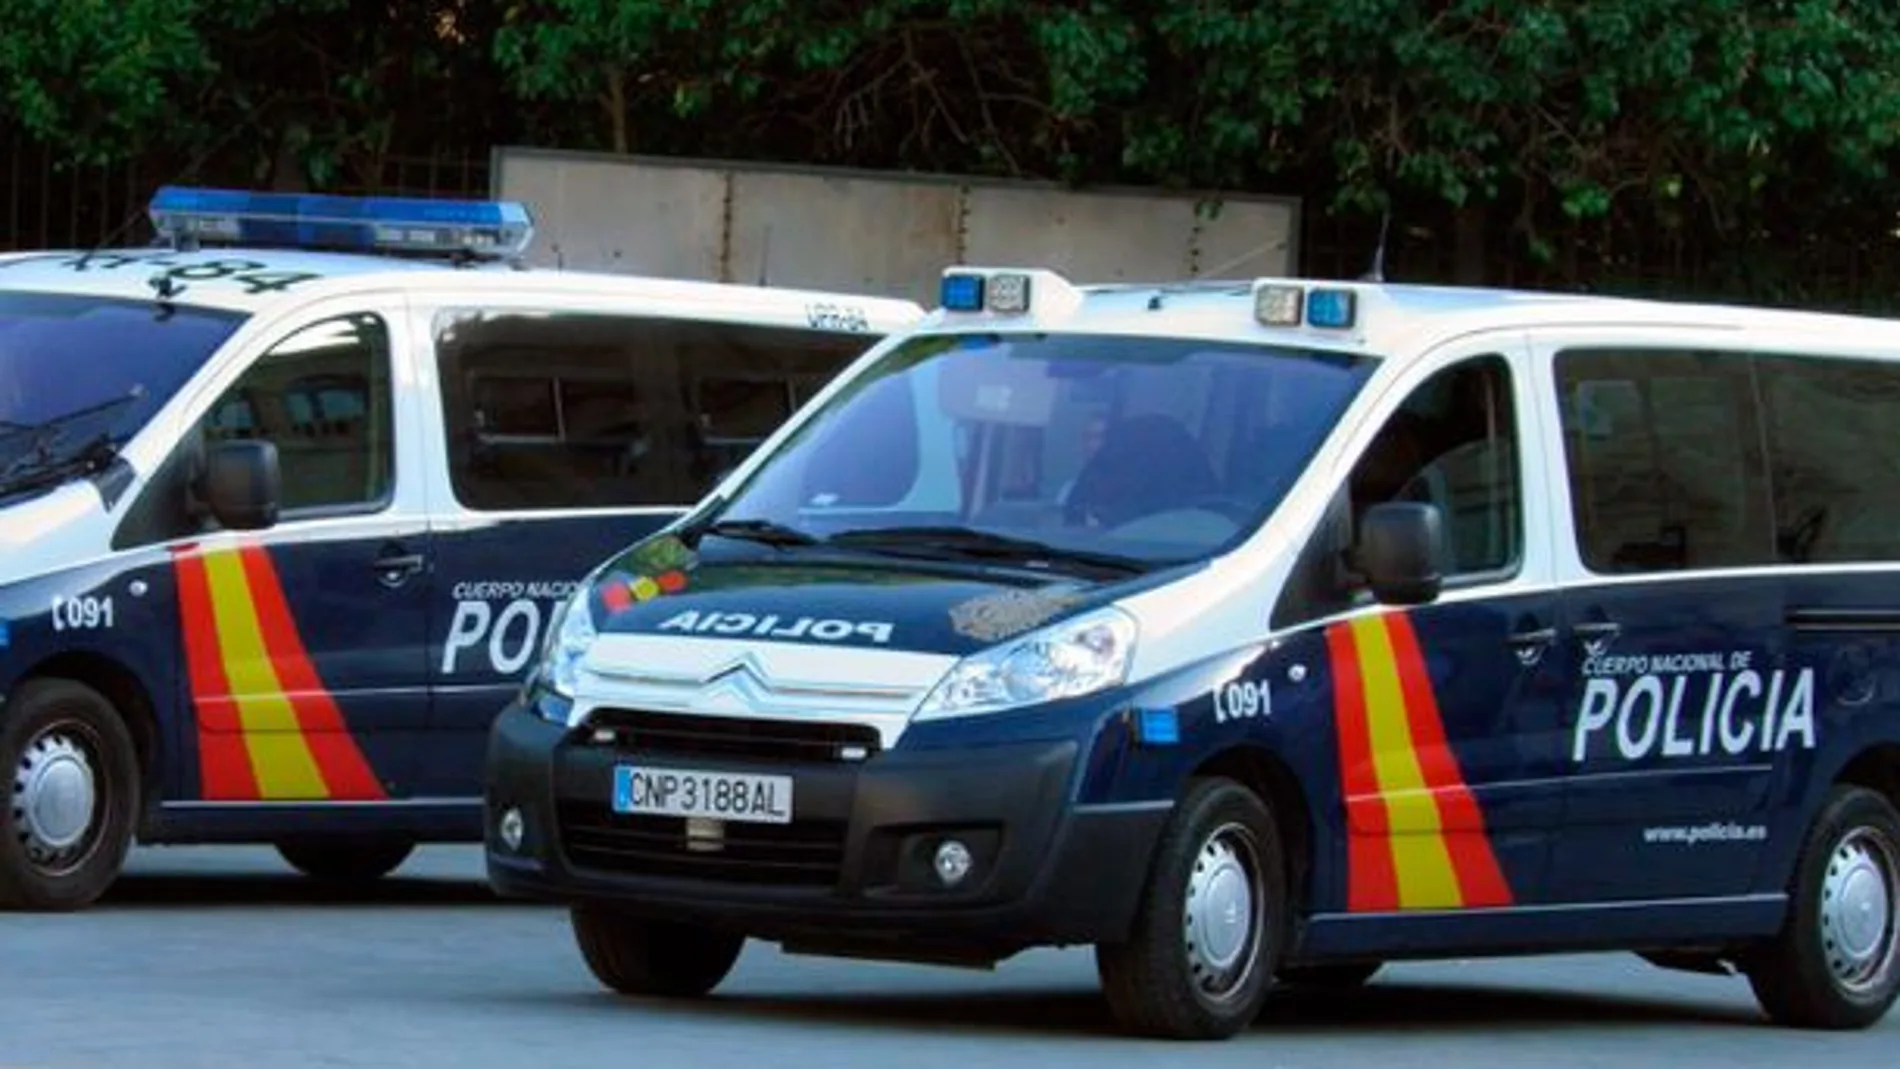 Los agentes consiguieron localizar y detener a 18 personas en Madrid.